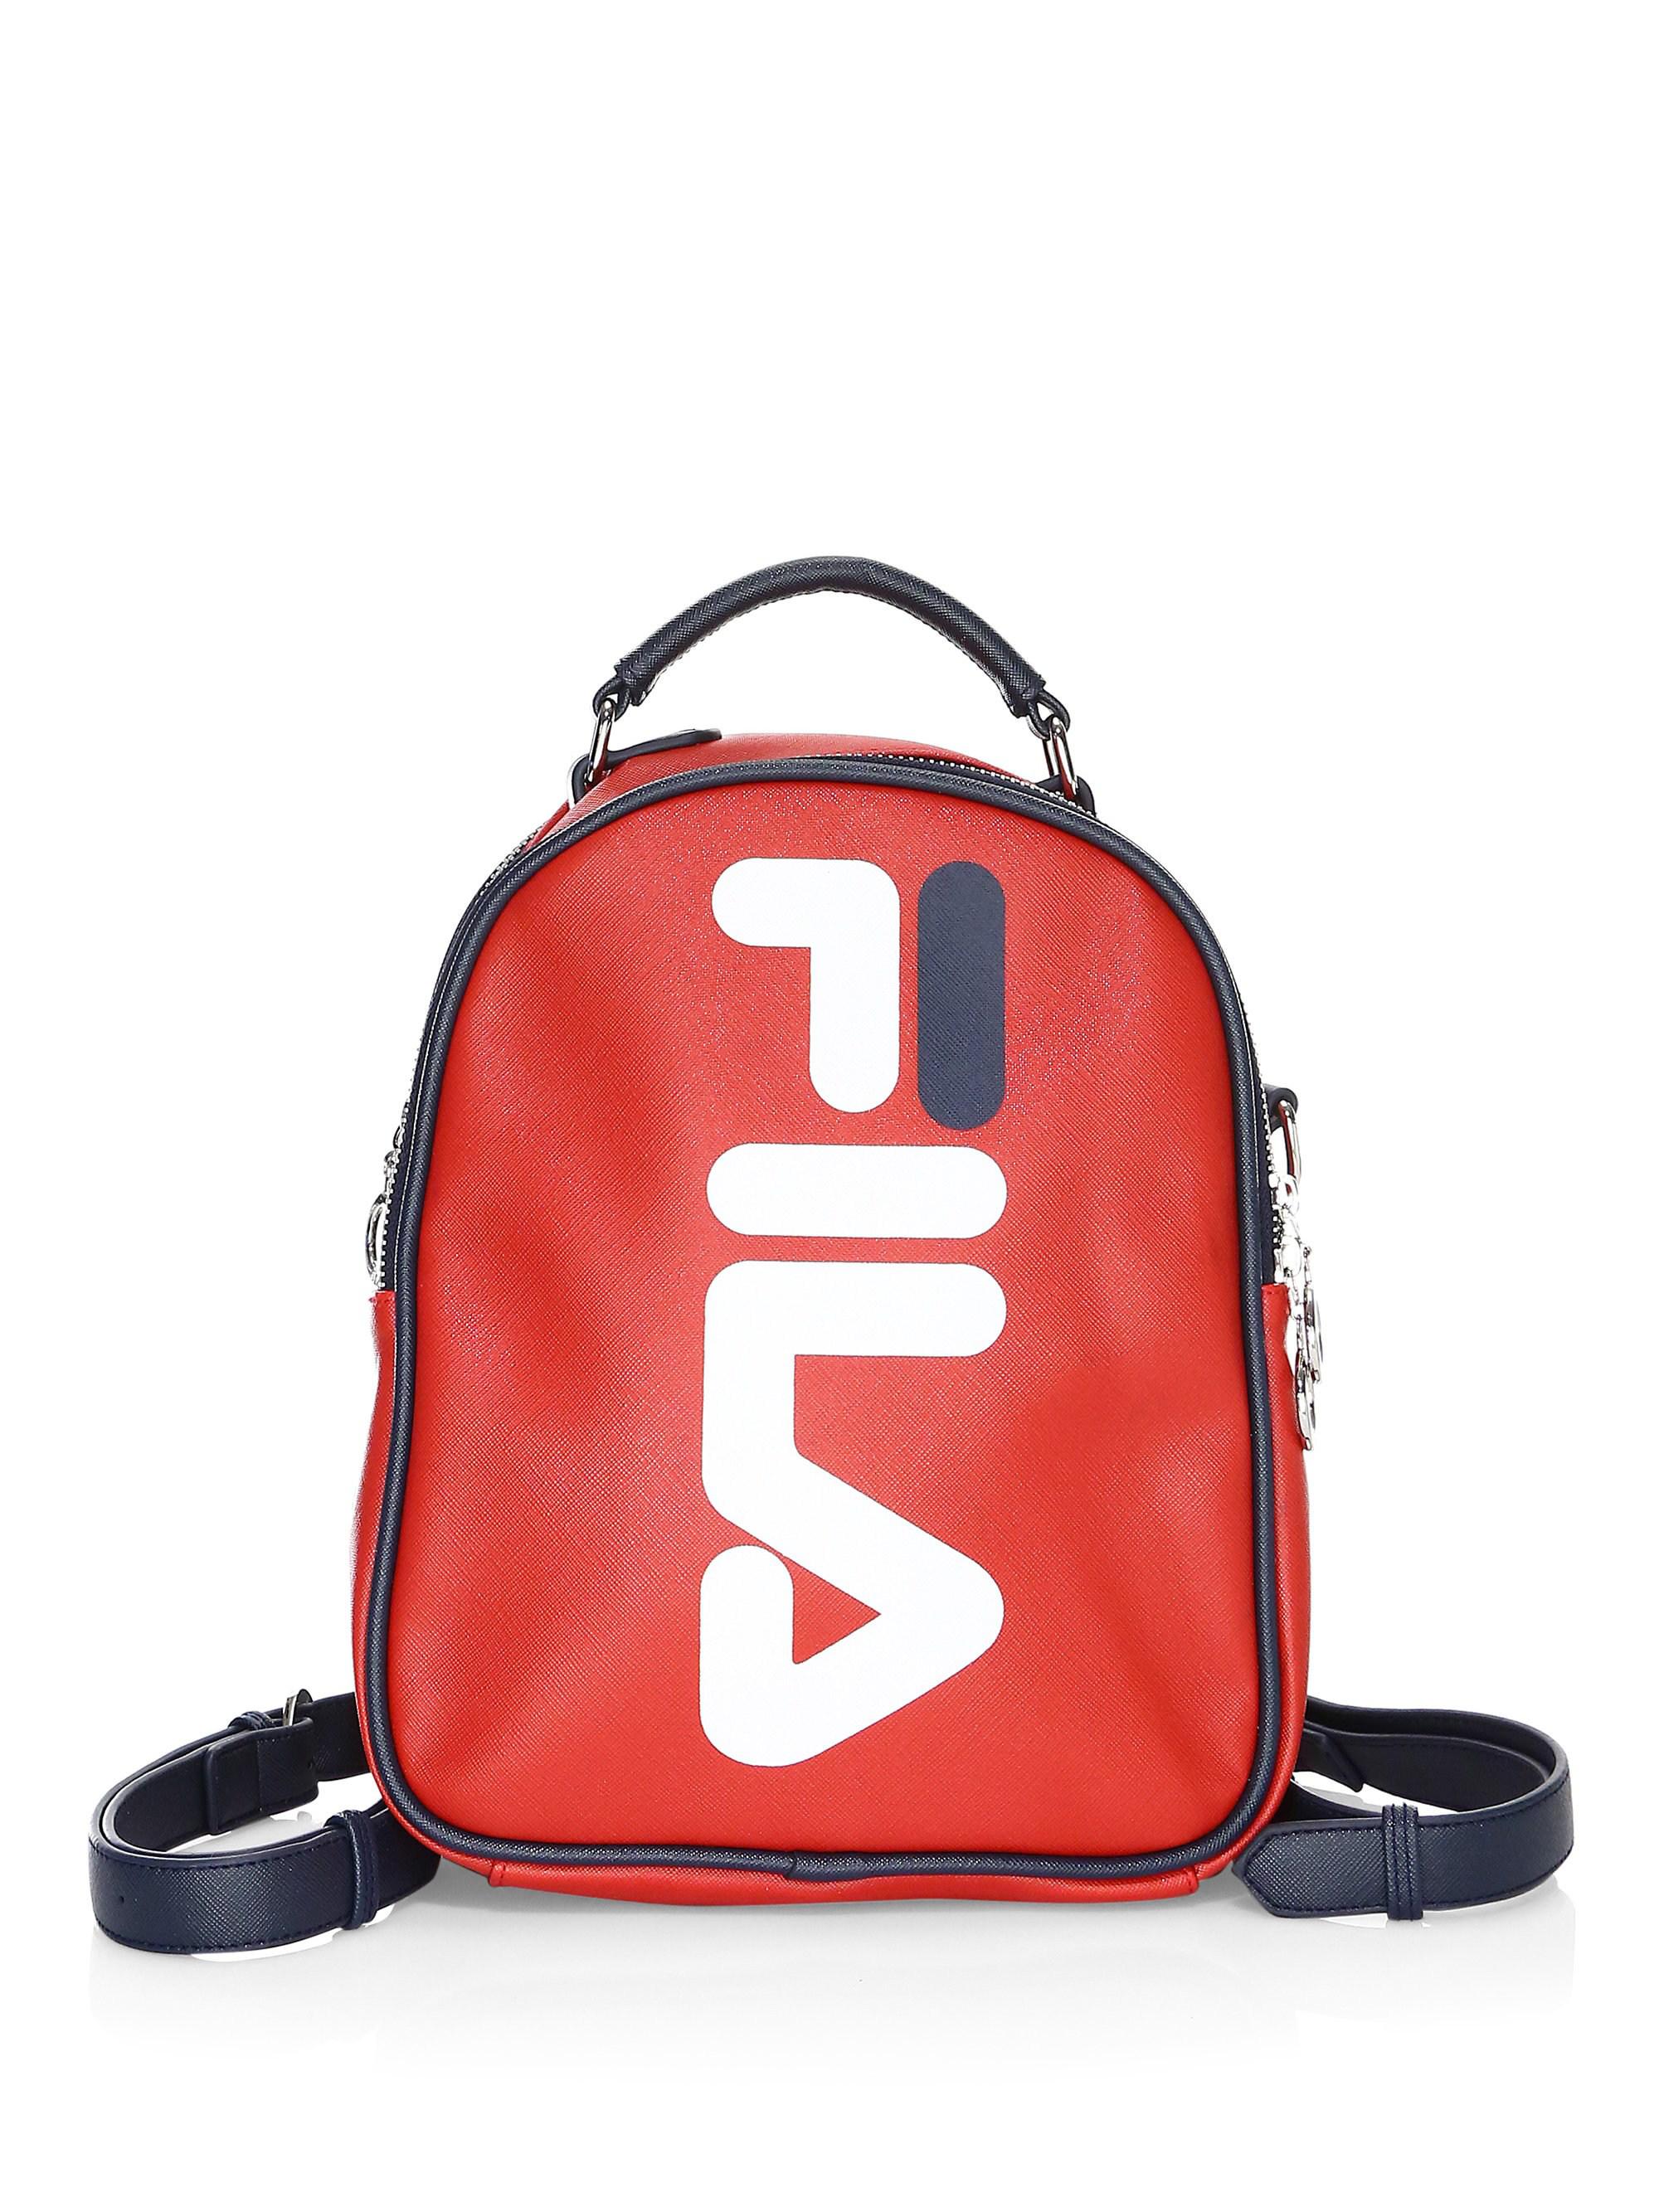 fila backpack red